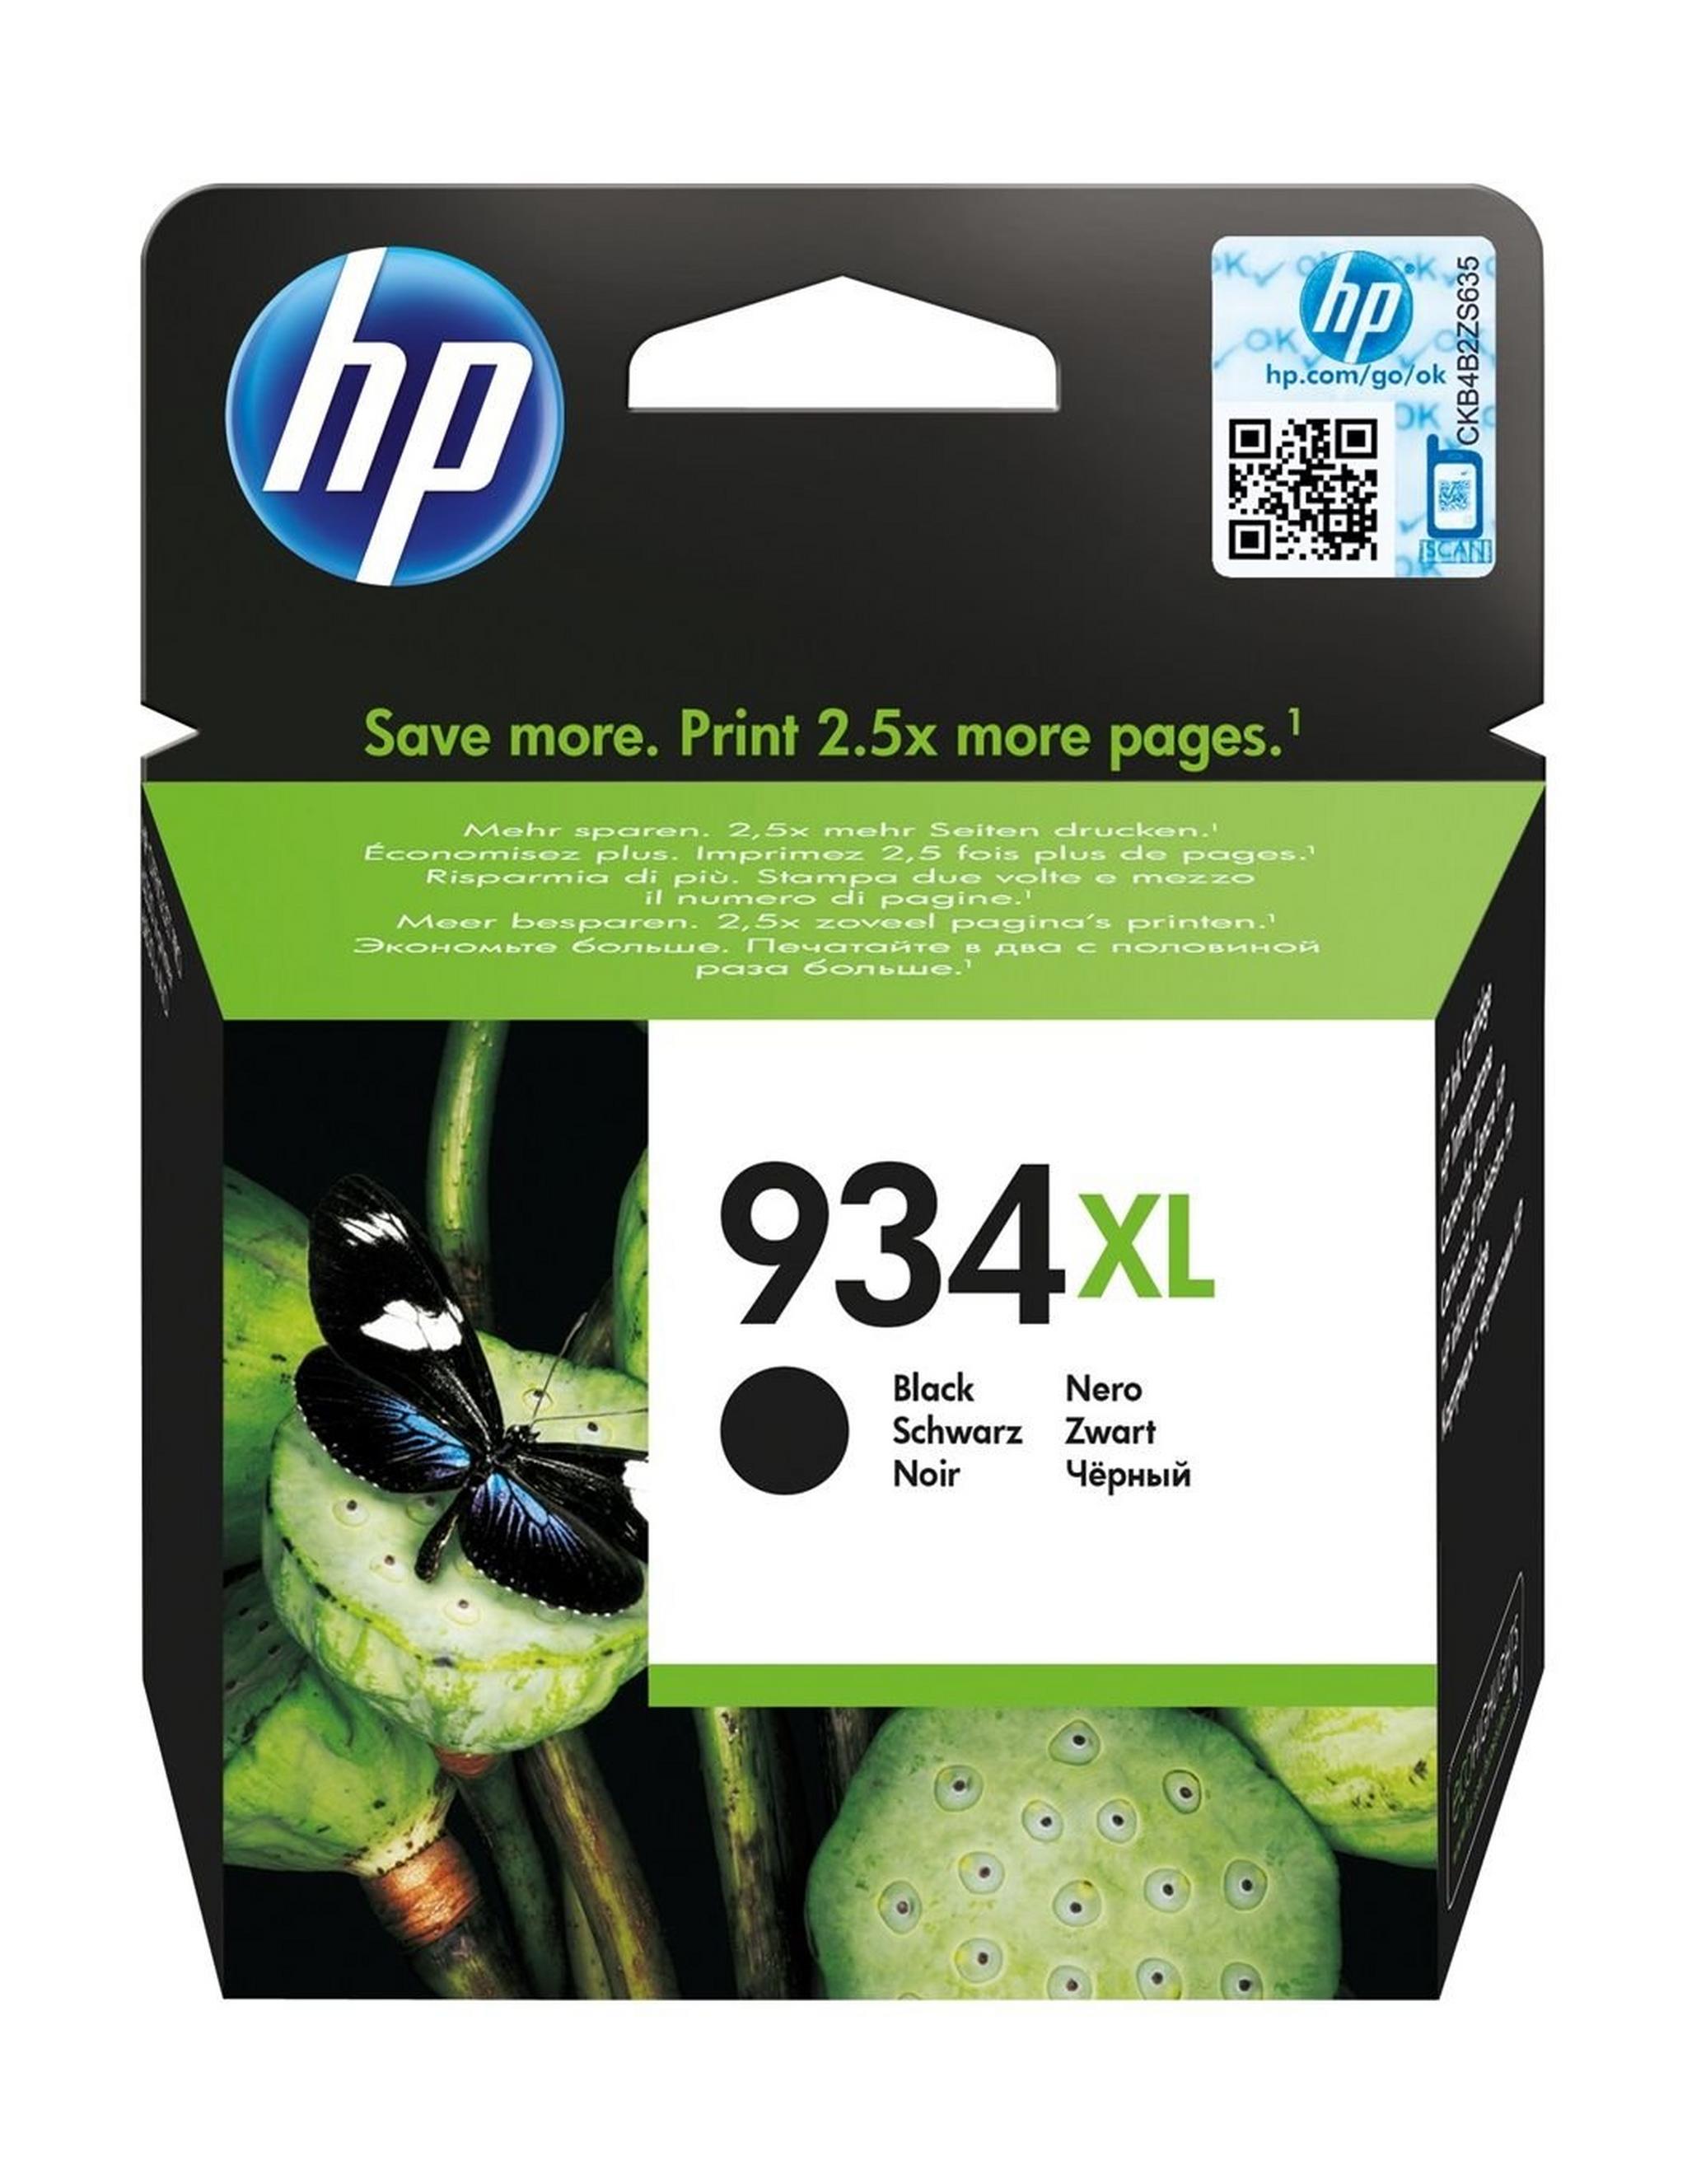 HP Ink 934XL Black Ink